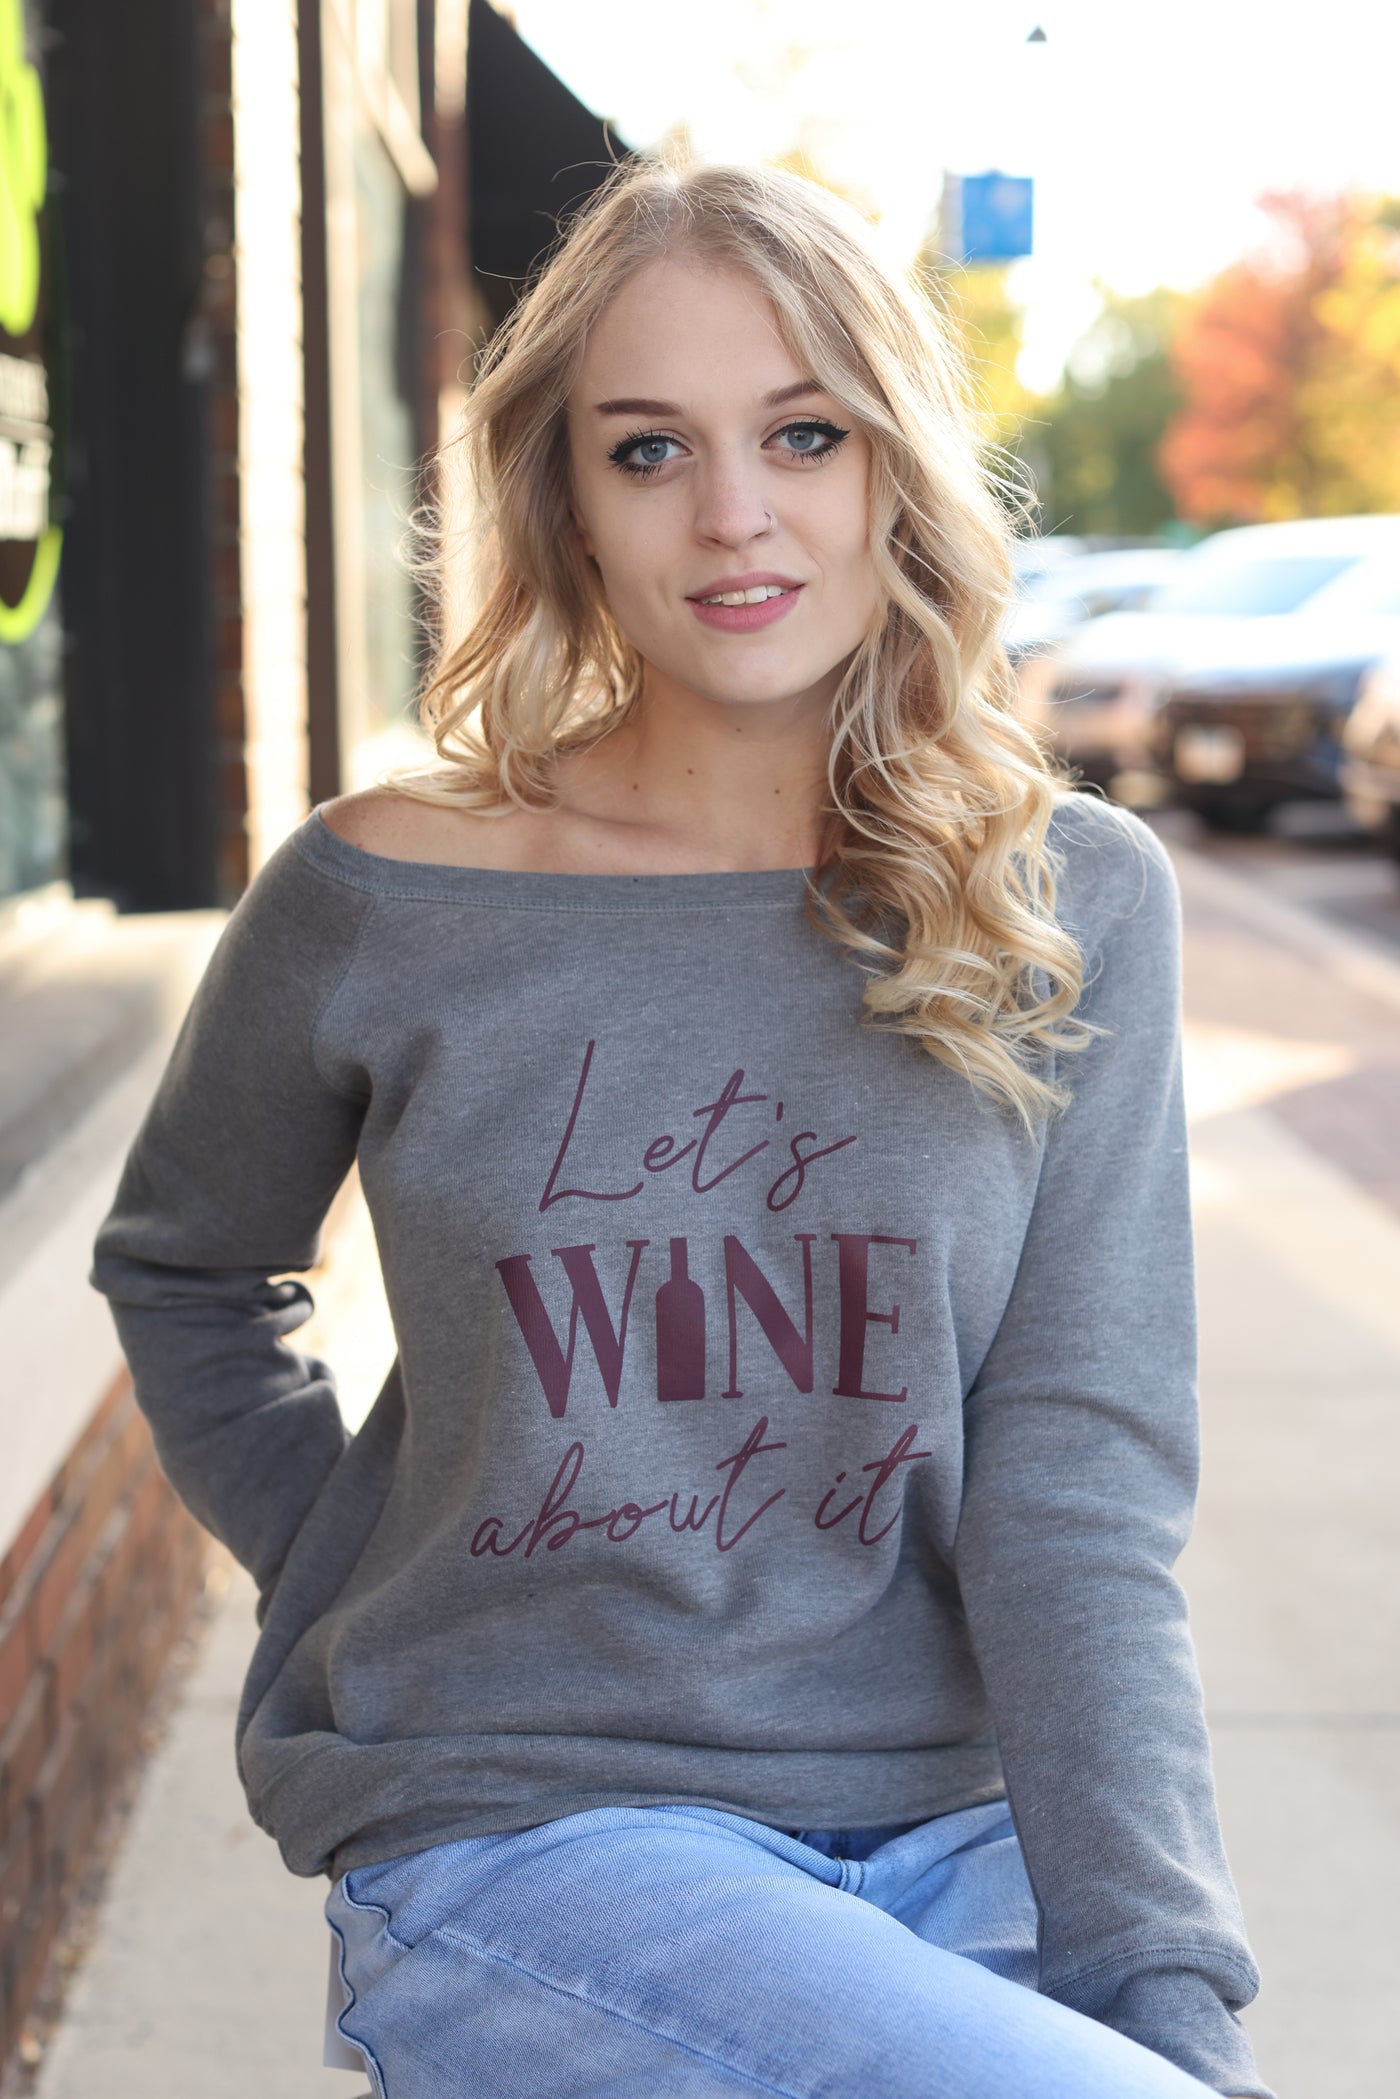 Let's Wine About It Sweatshirt Gray - MELISSA JEAN